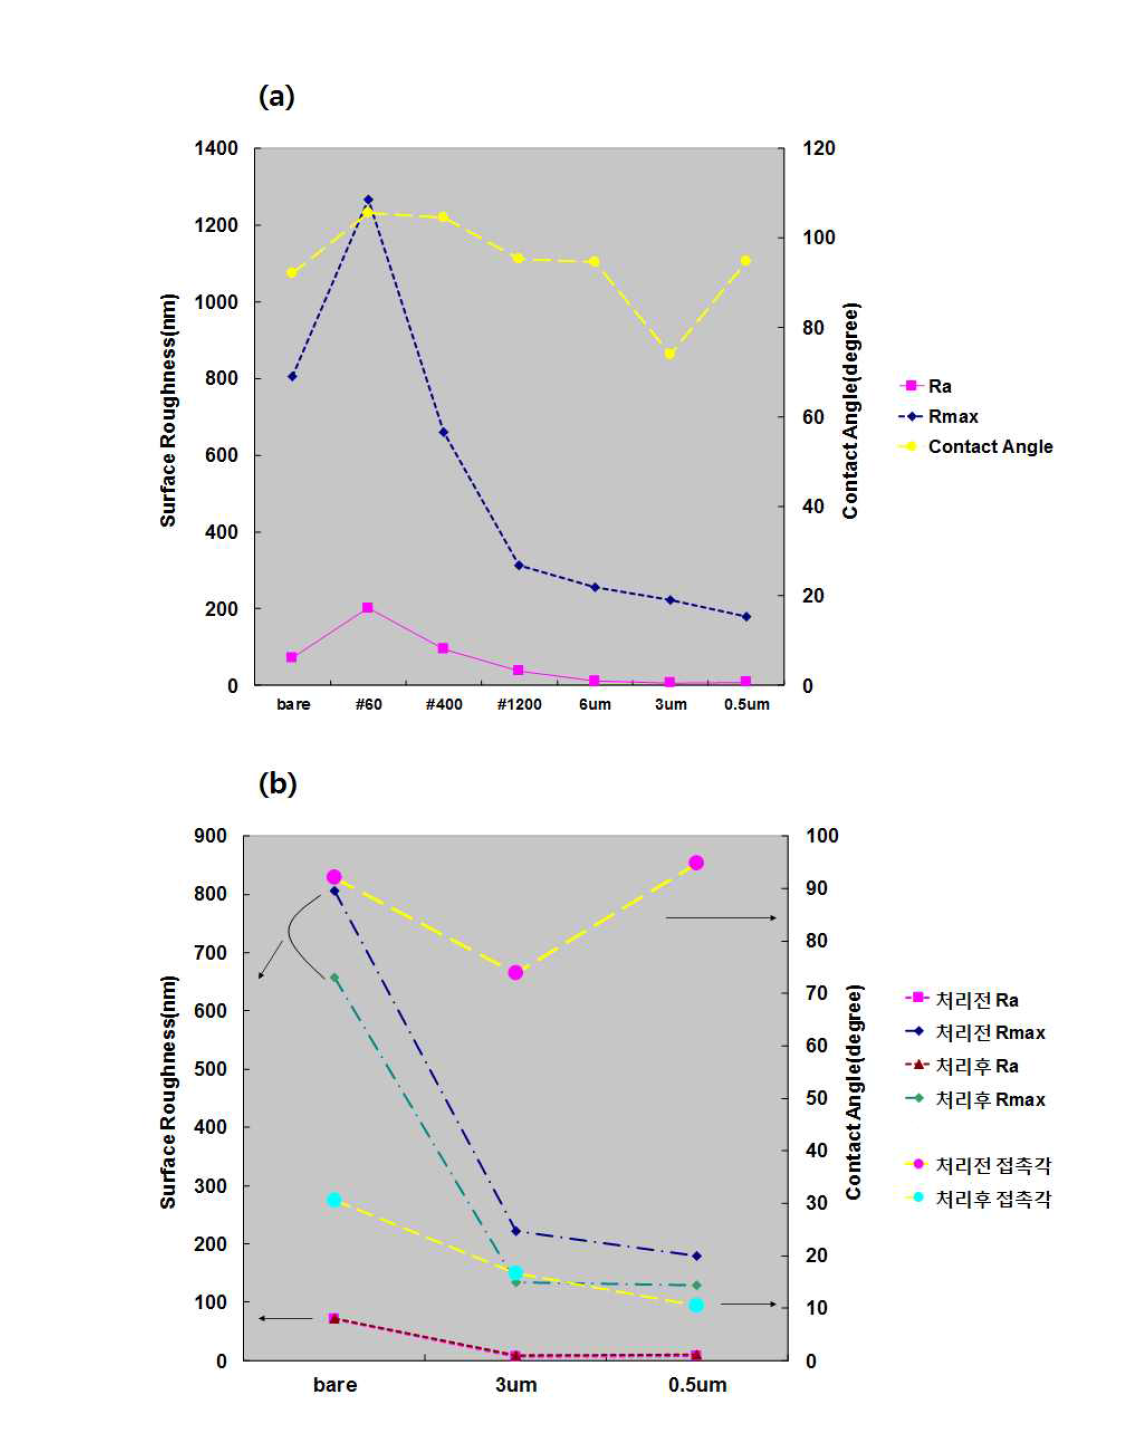 금속소재의 표면거칠기와 접촉각의 변화 : (a) 폴리싱처리 영향비교, (b) 플라즈마 처리 전후 비교